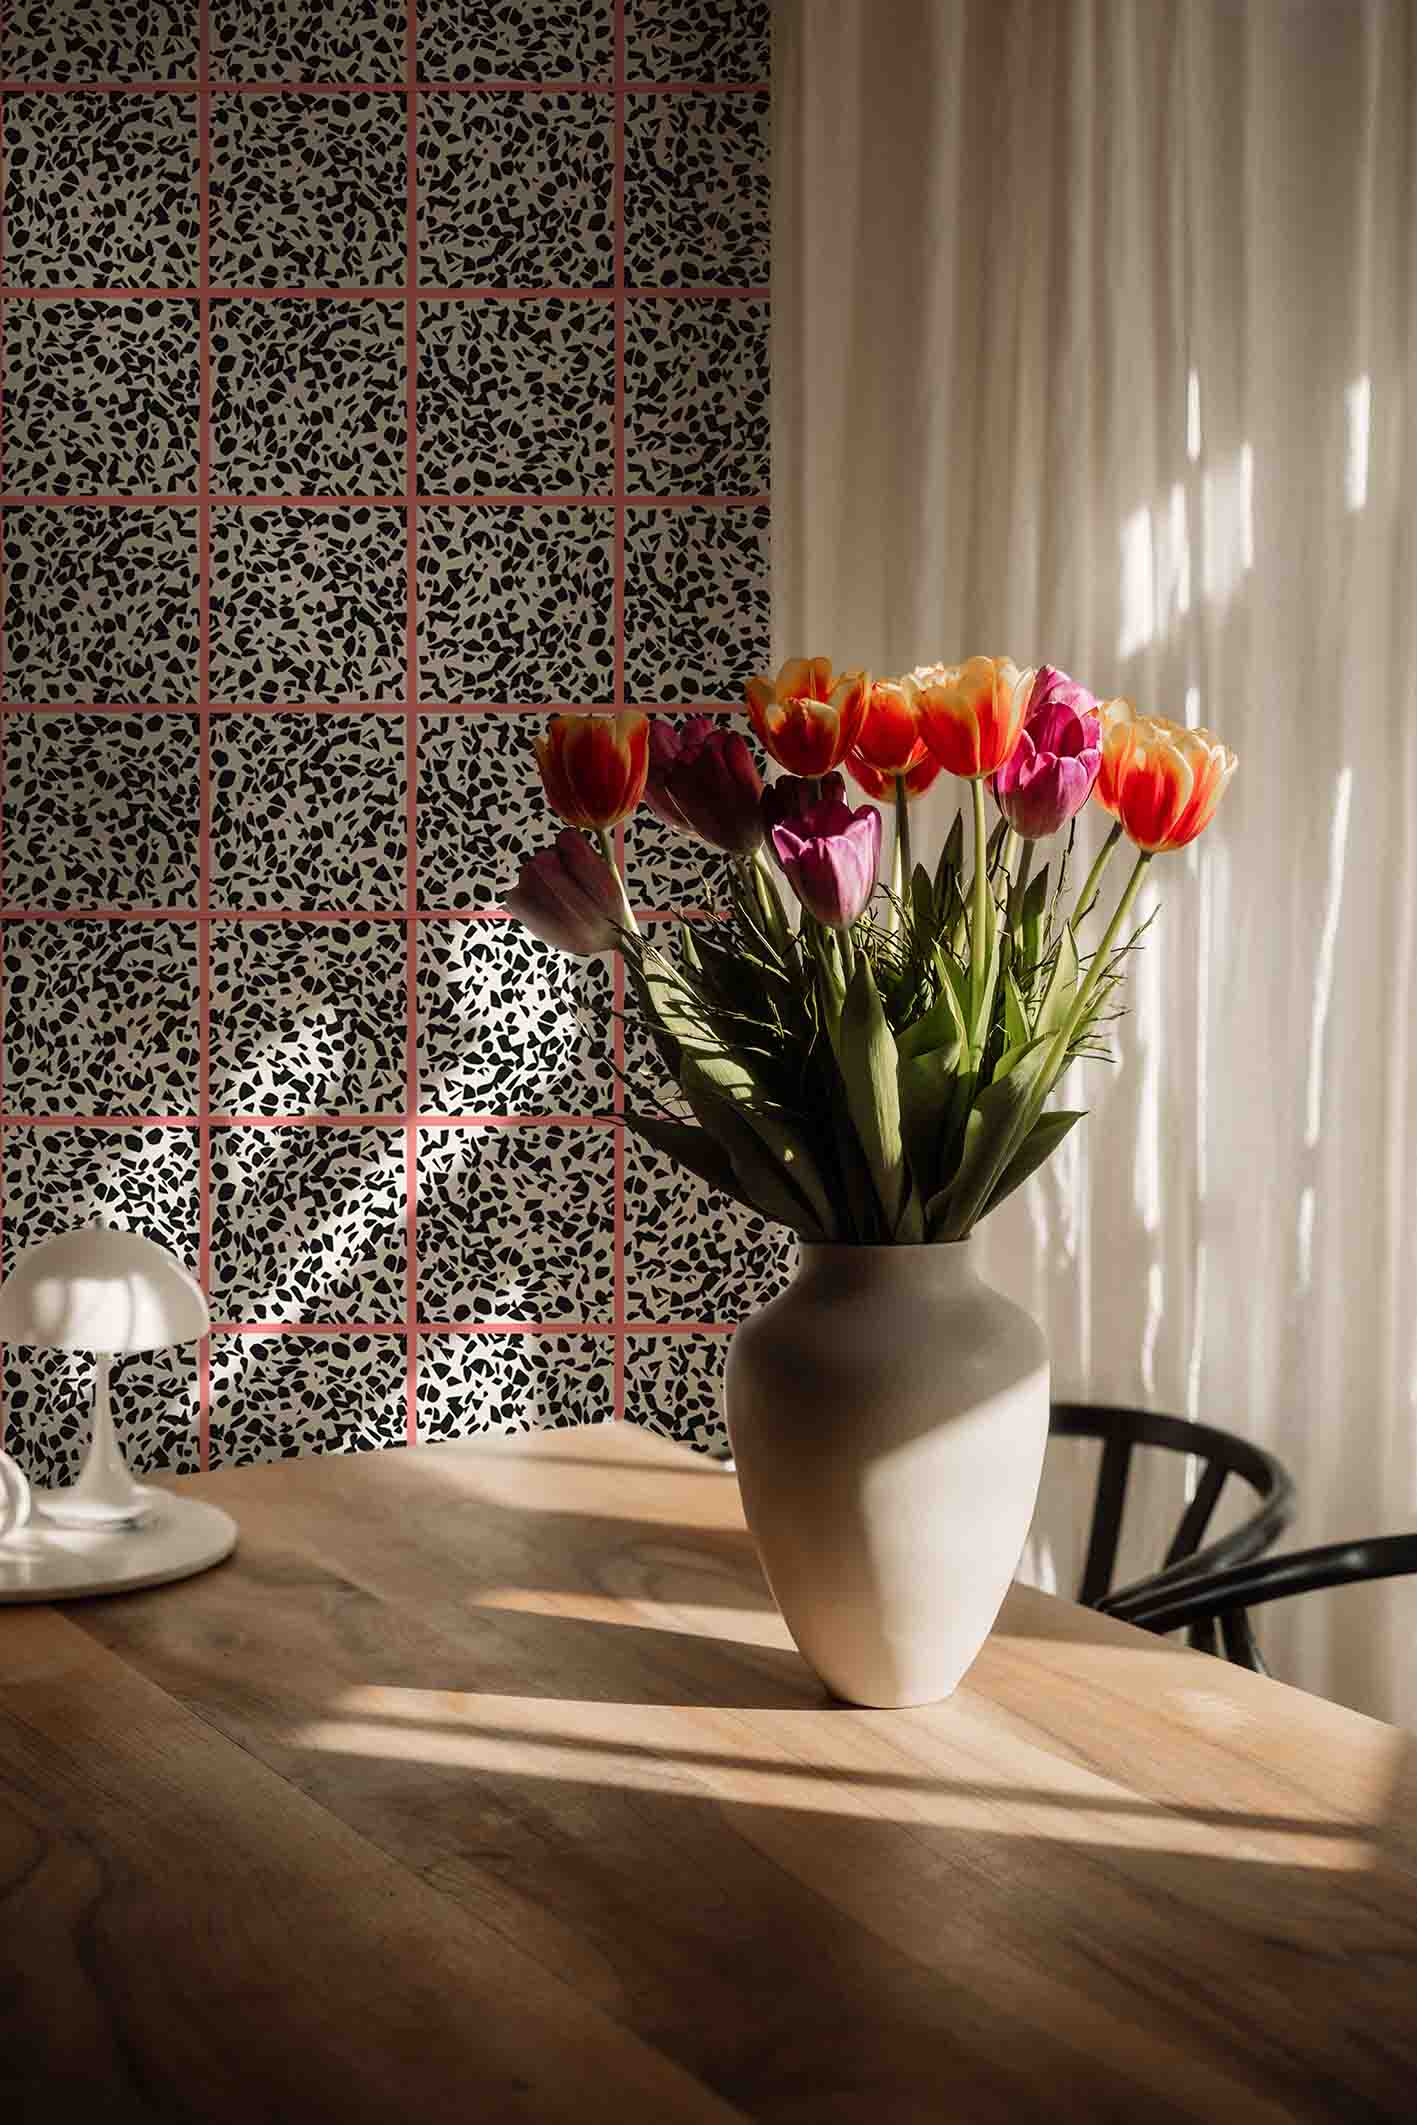 MaVoix-wallpaper-Fuga-fragola-by-Studio-Lievito-pattern-Collezione-Racconti-detail